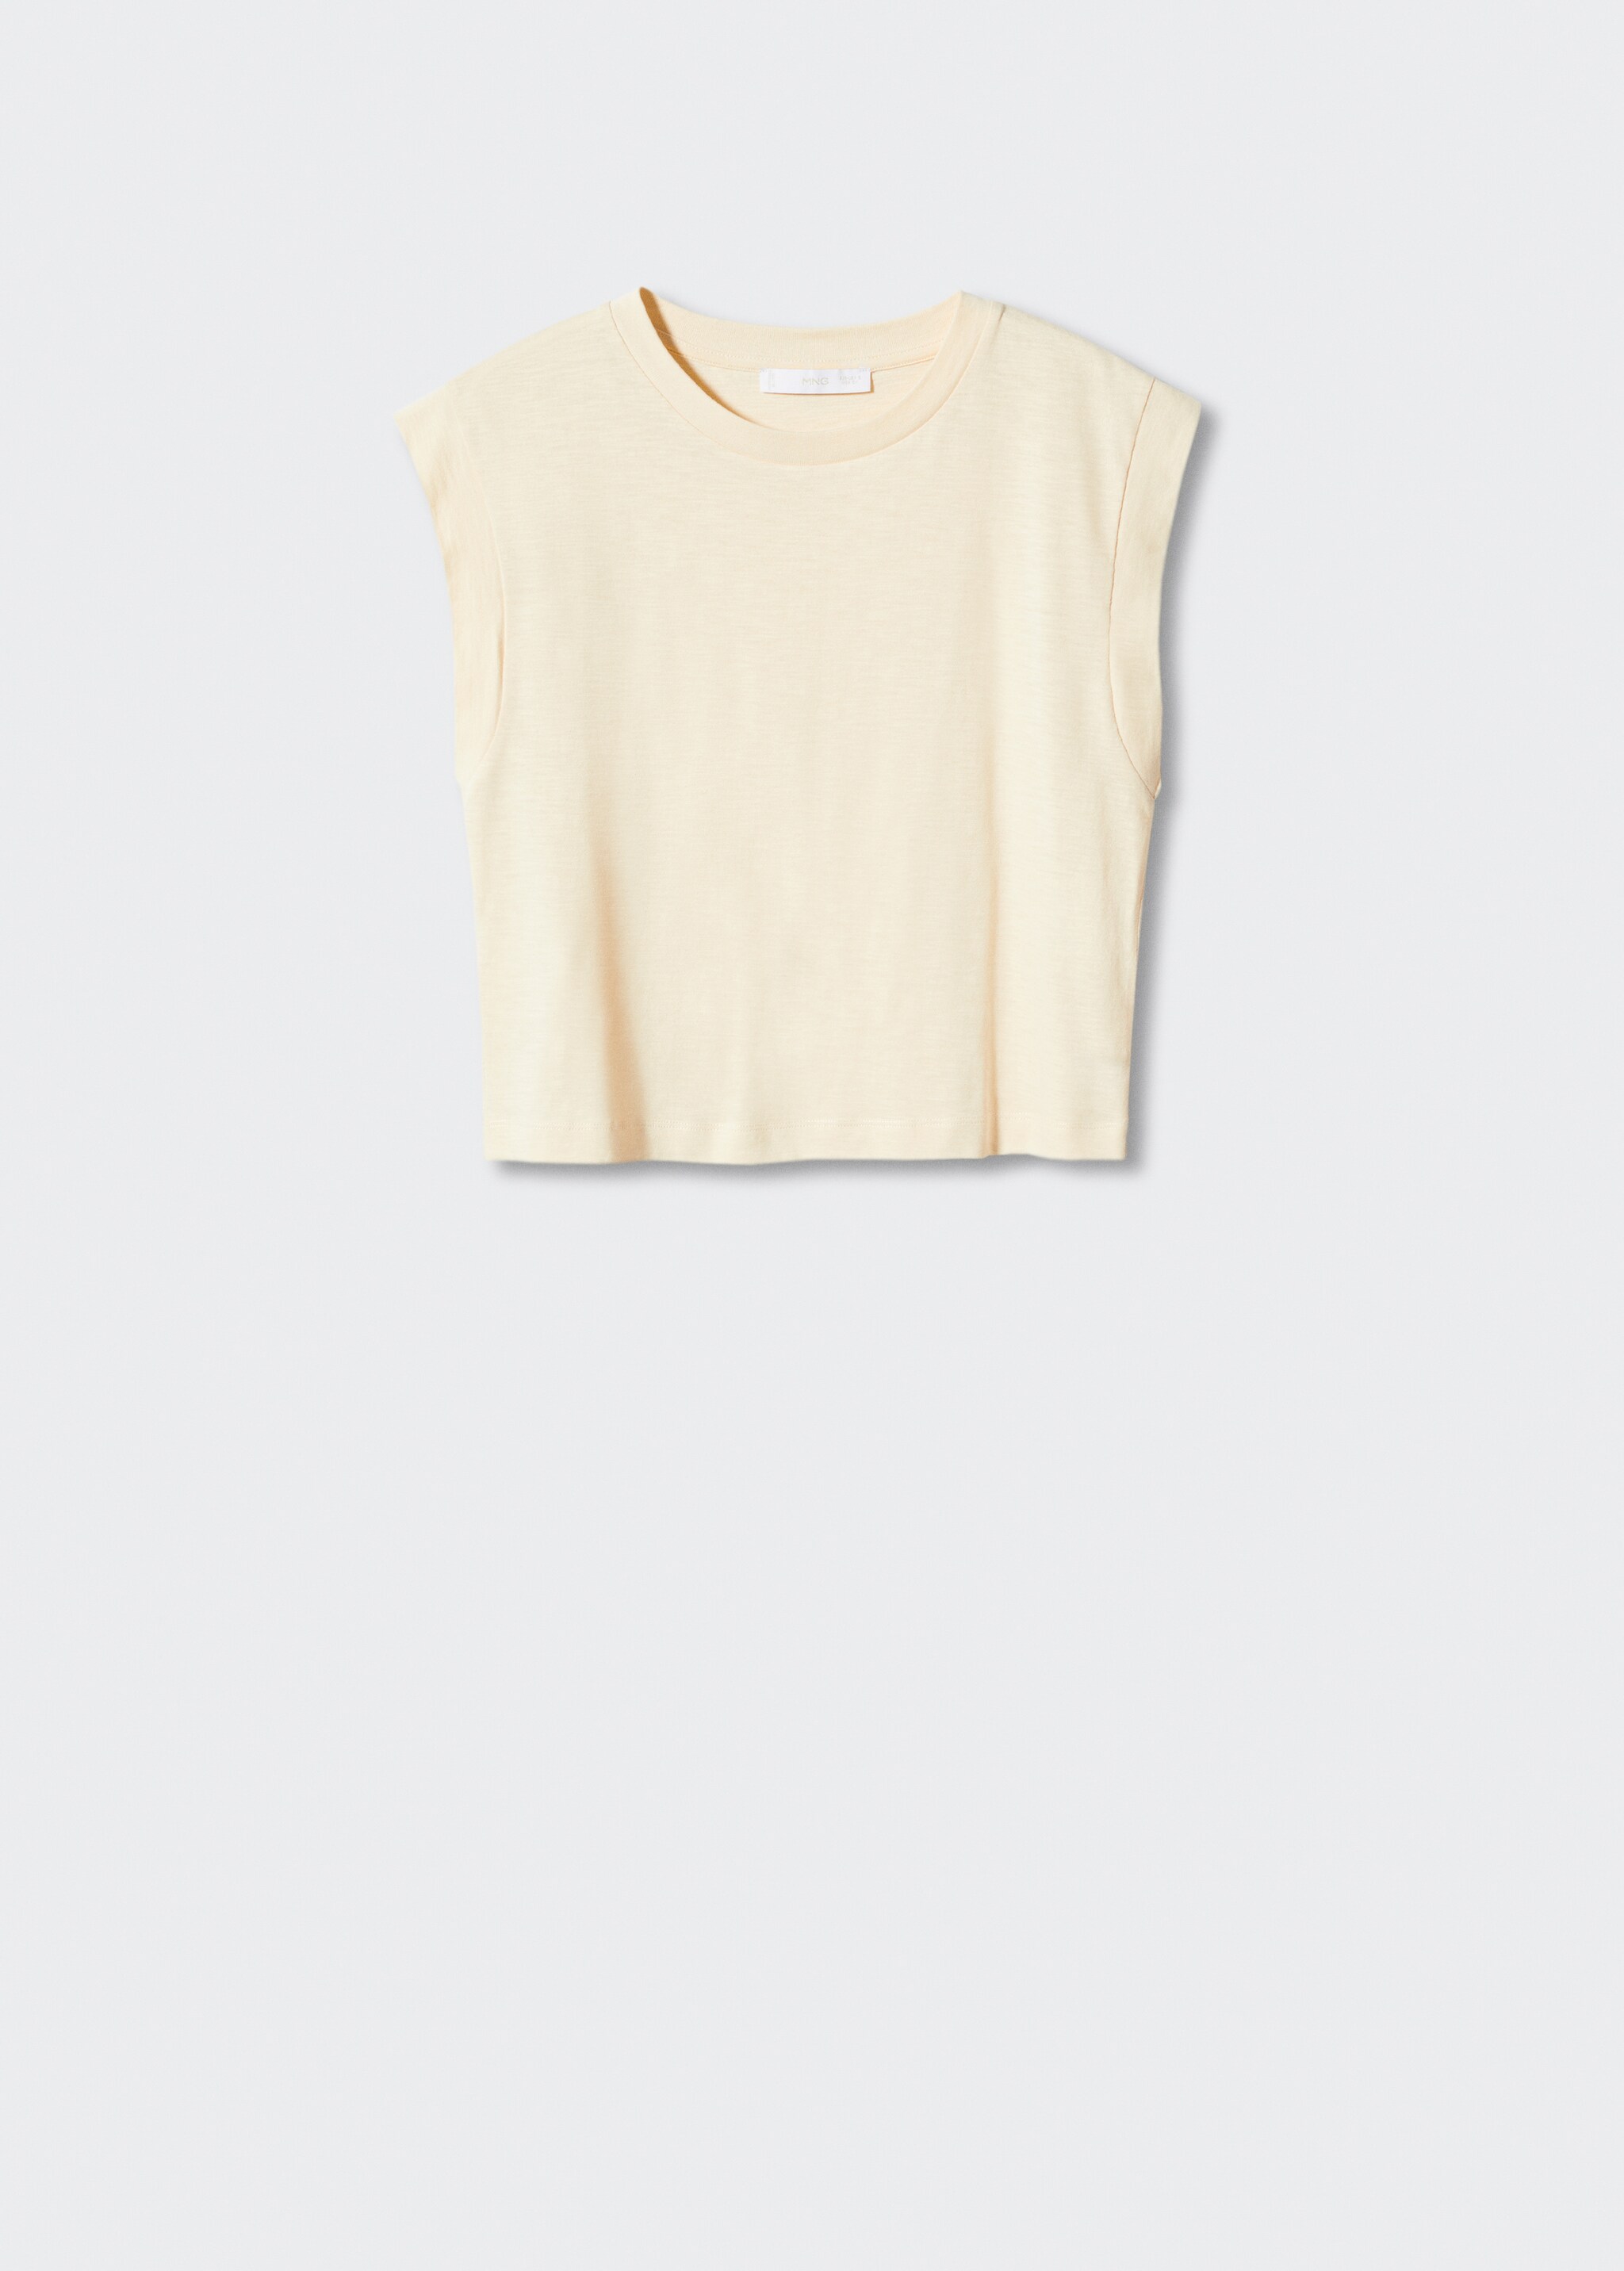 Camiseta crop algodón - Artículo sin modelo